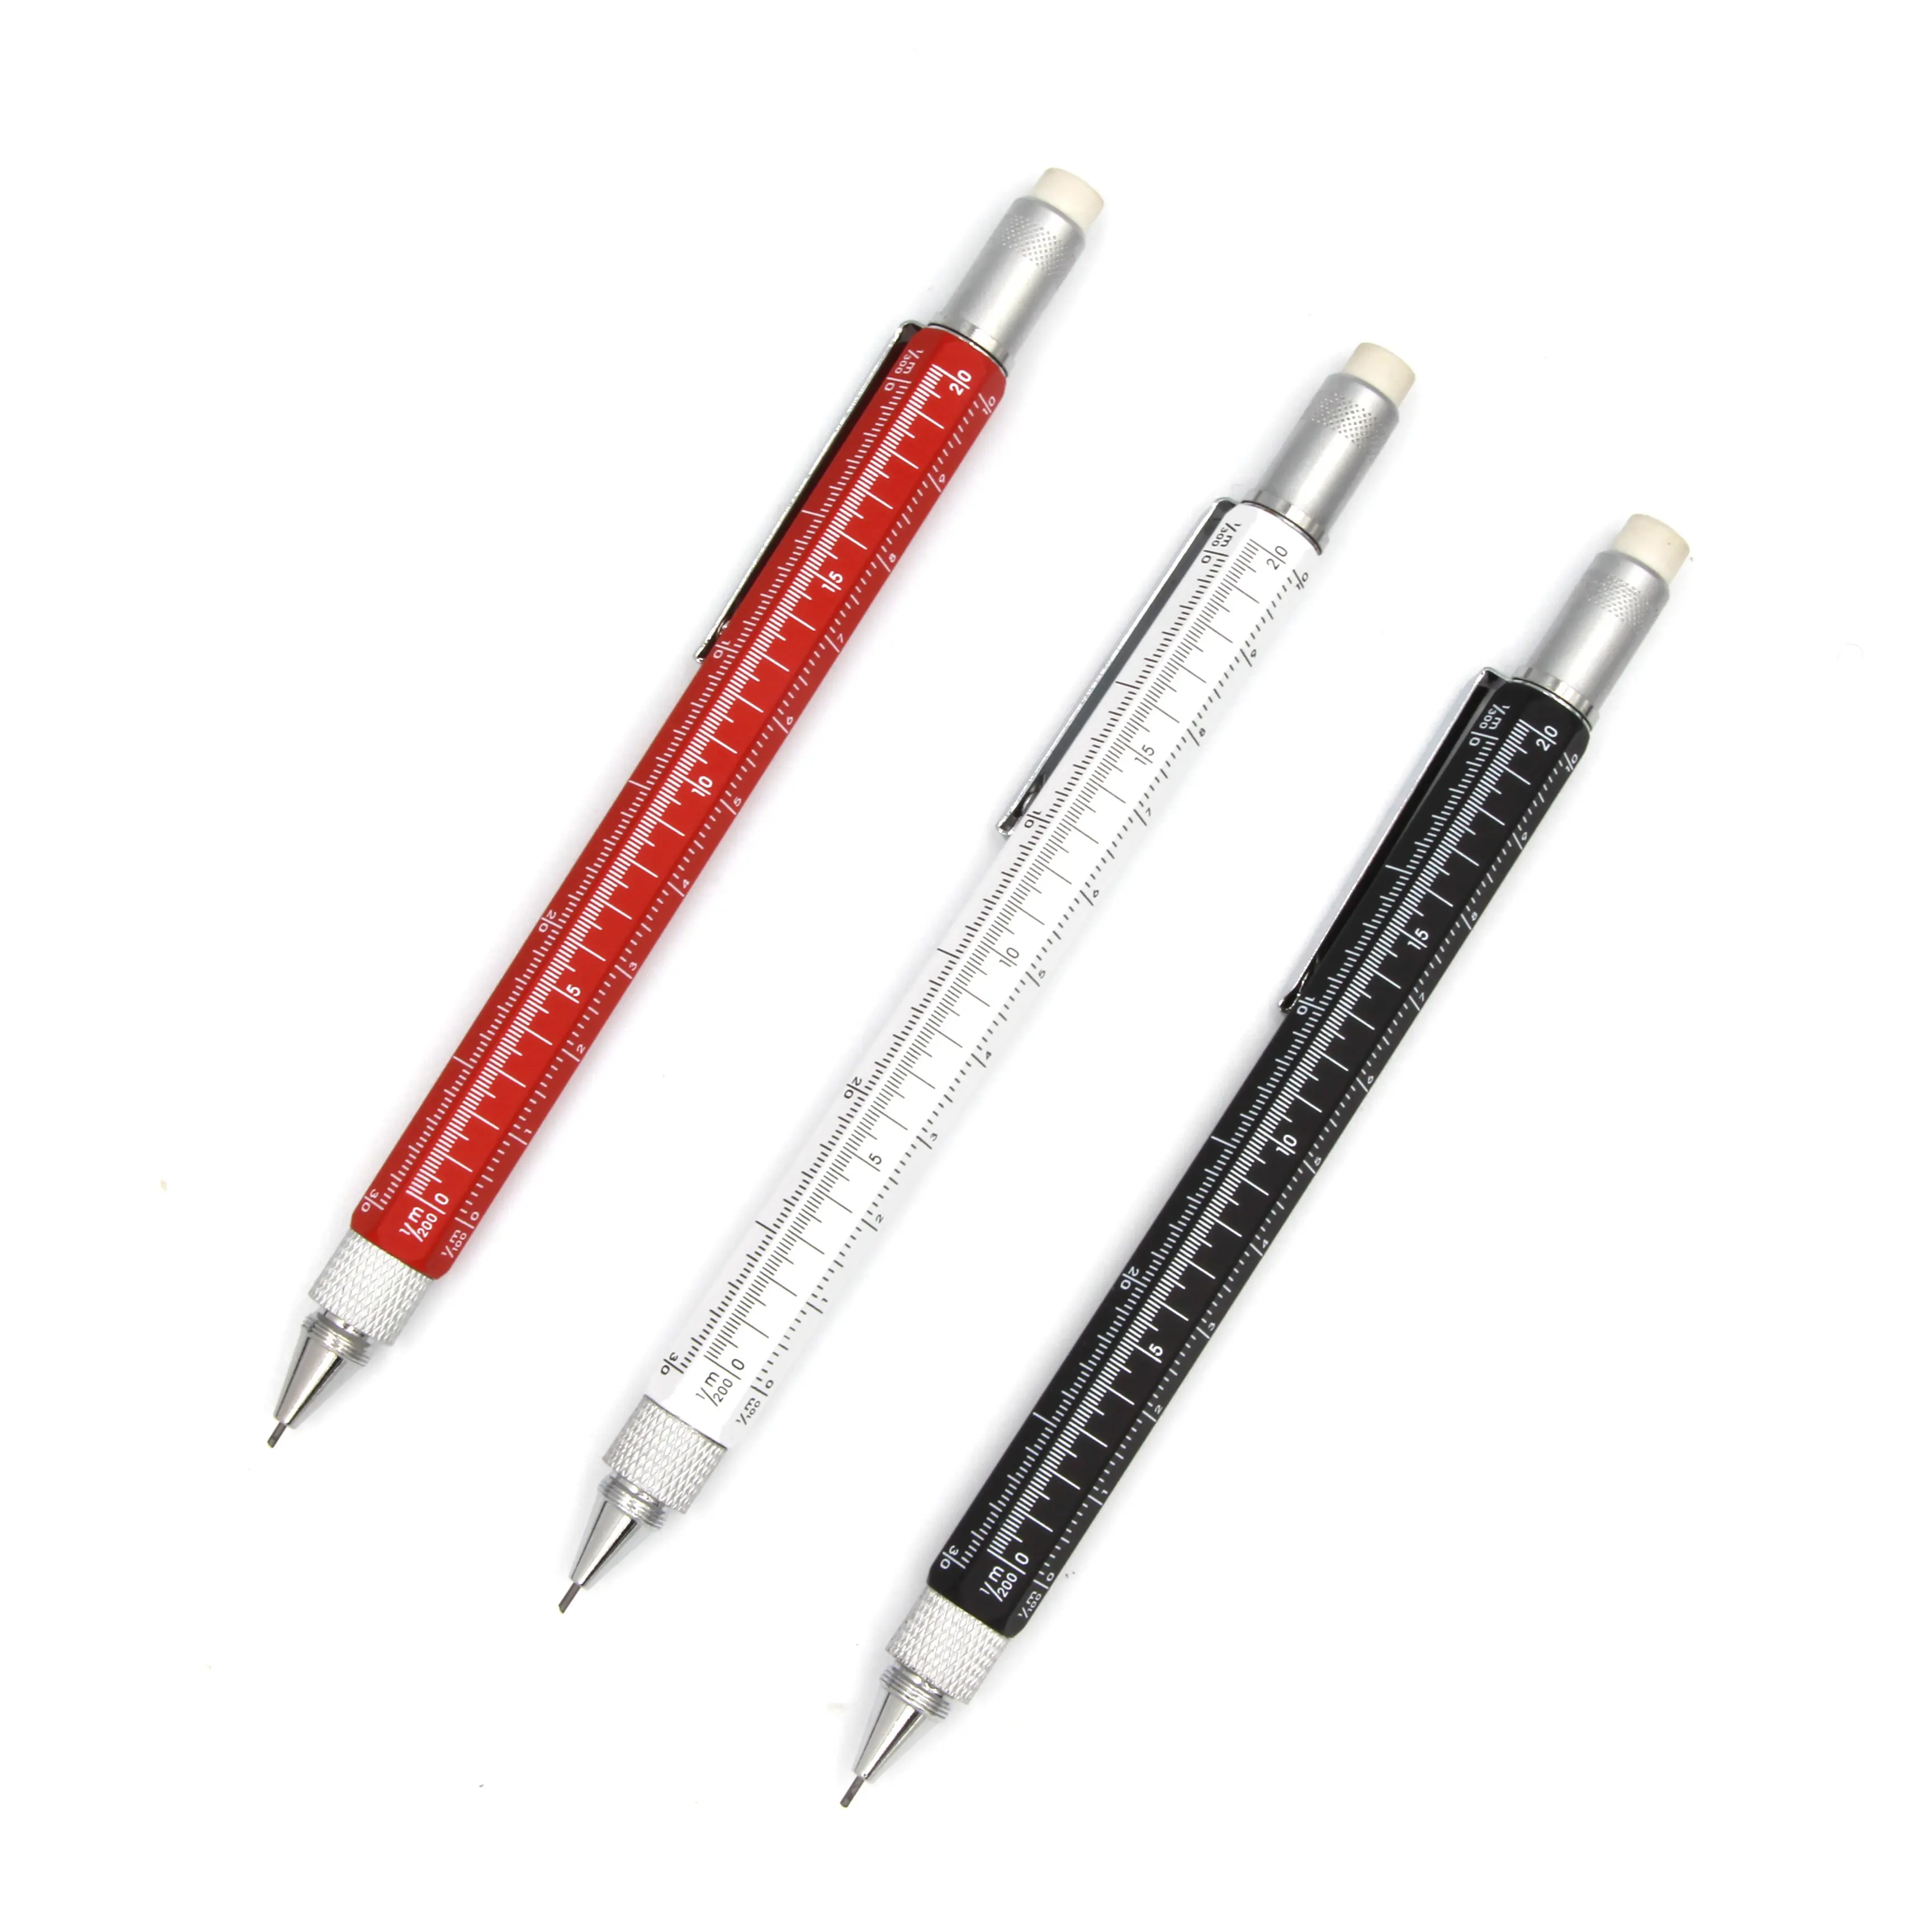 5 ב 1 מכאני עיפרון אוטומטי ניסוח עיפרון 0.5mm 0.7mm עם מברגים עבור משרד בית ספר כתיבת טיוטה